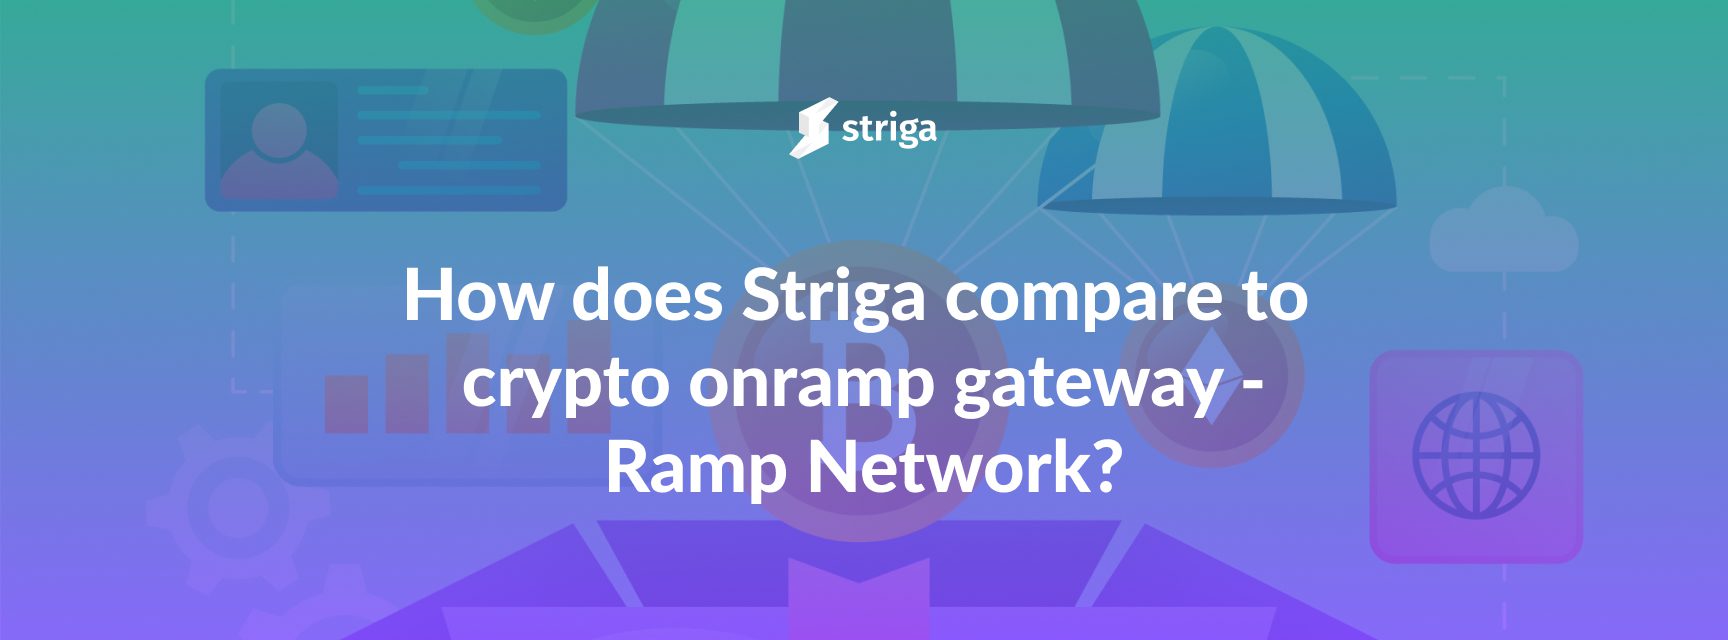 striga-vs-Ramp-Network